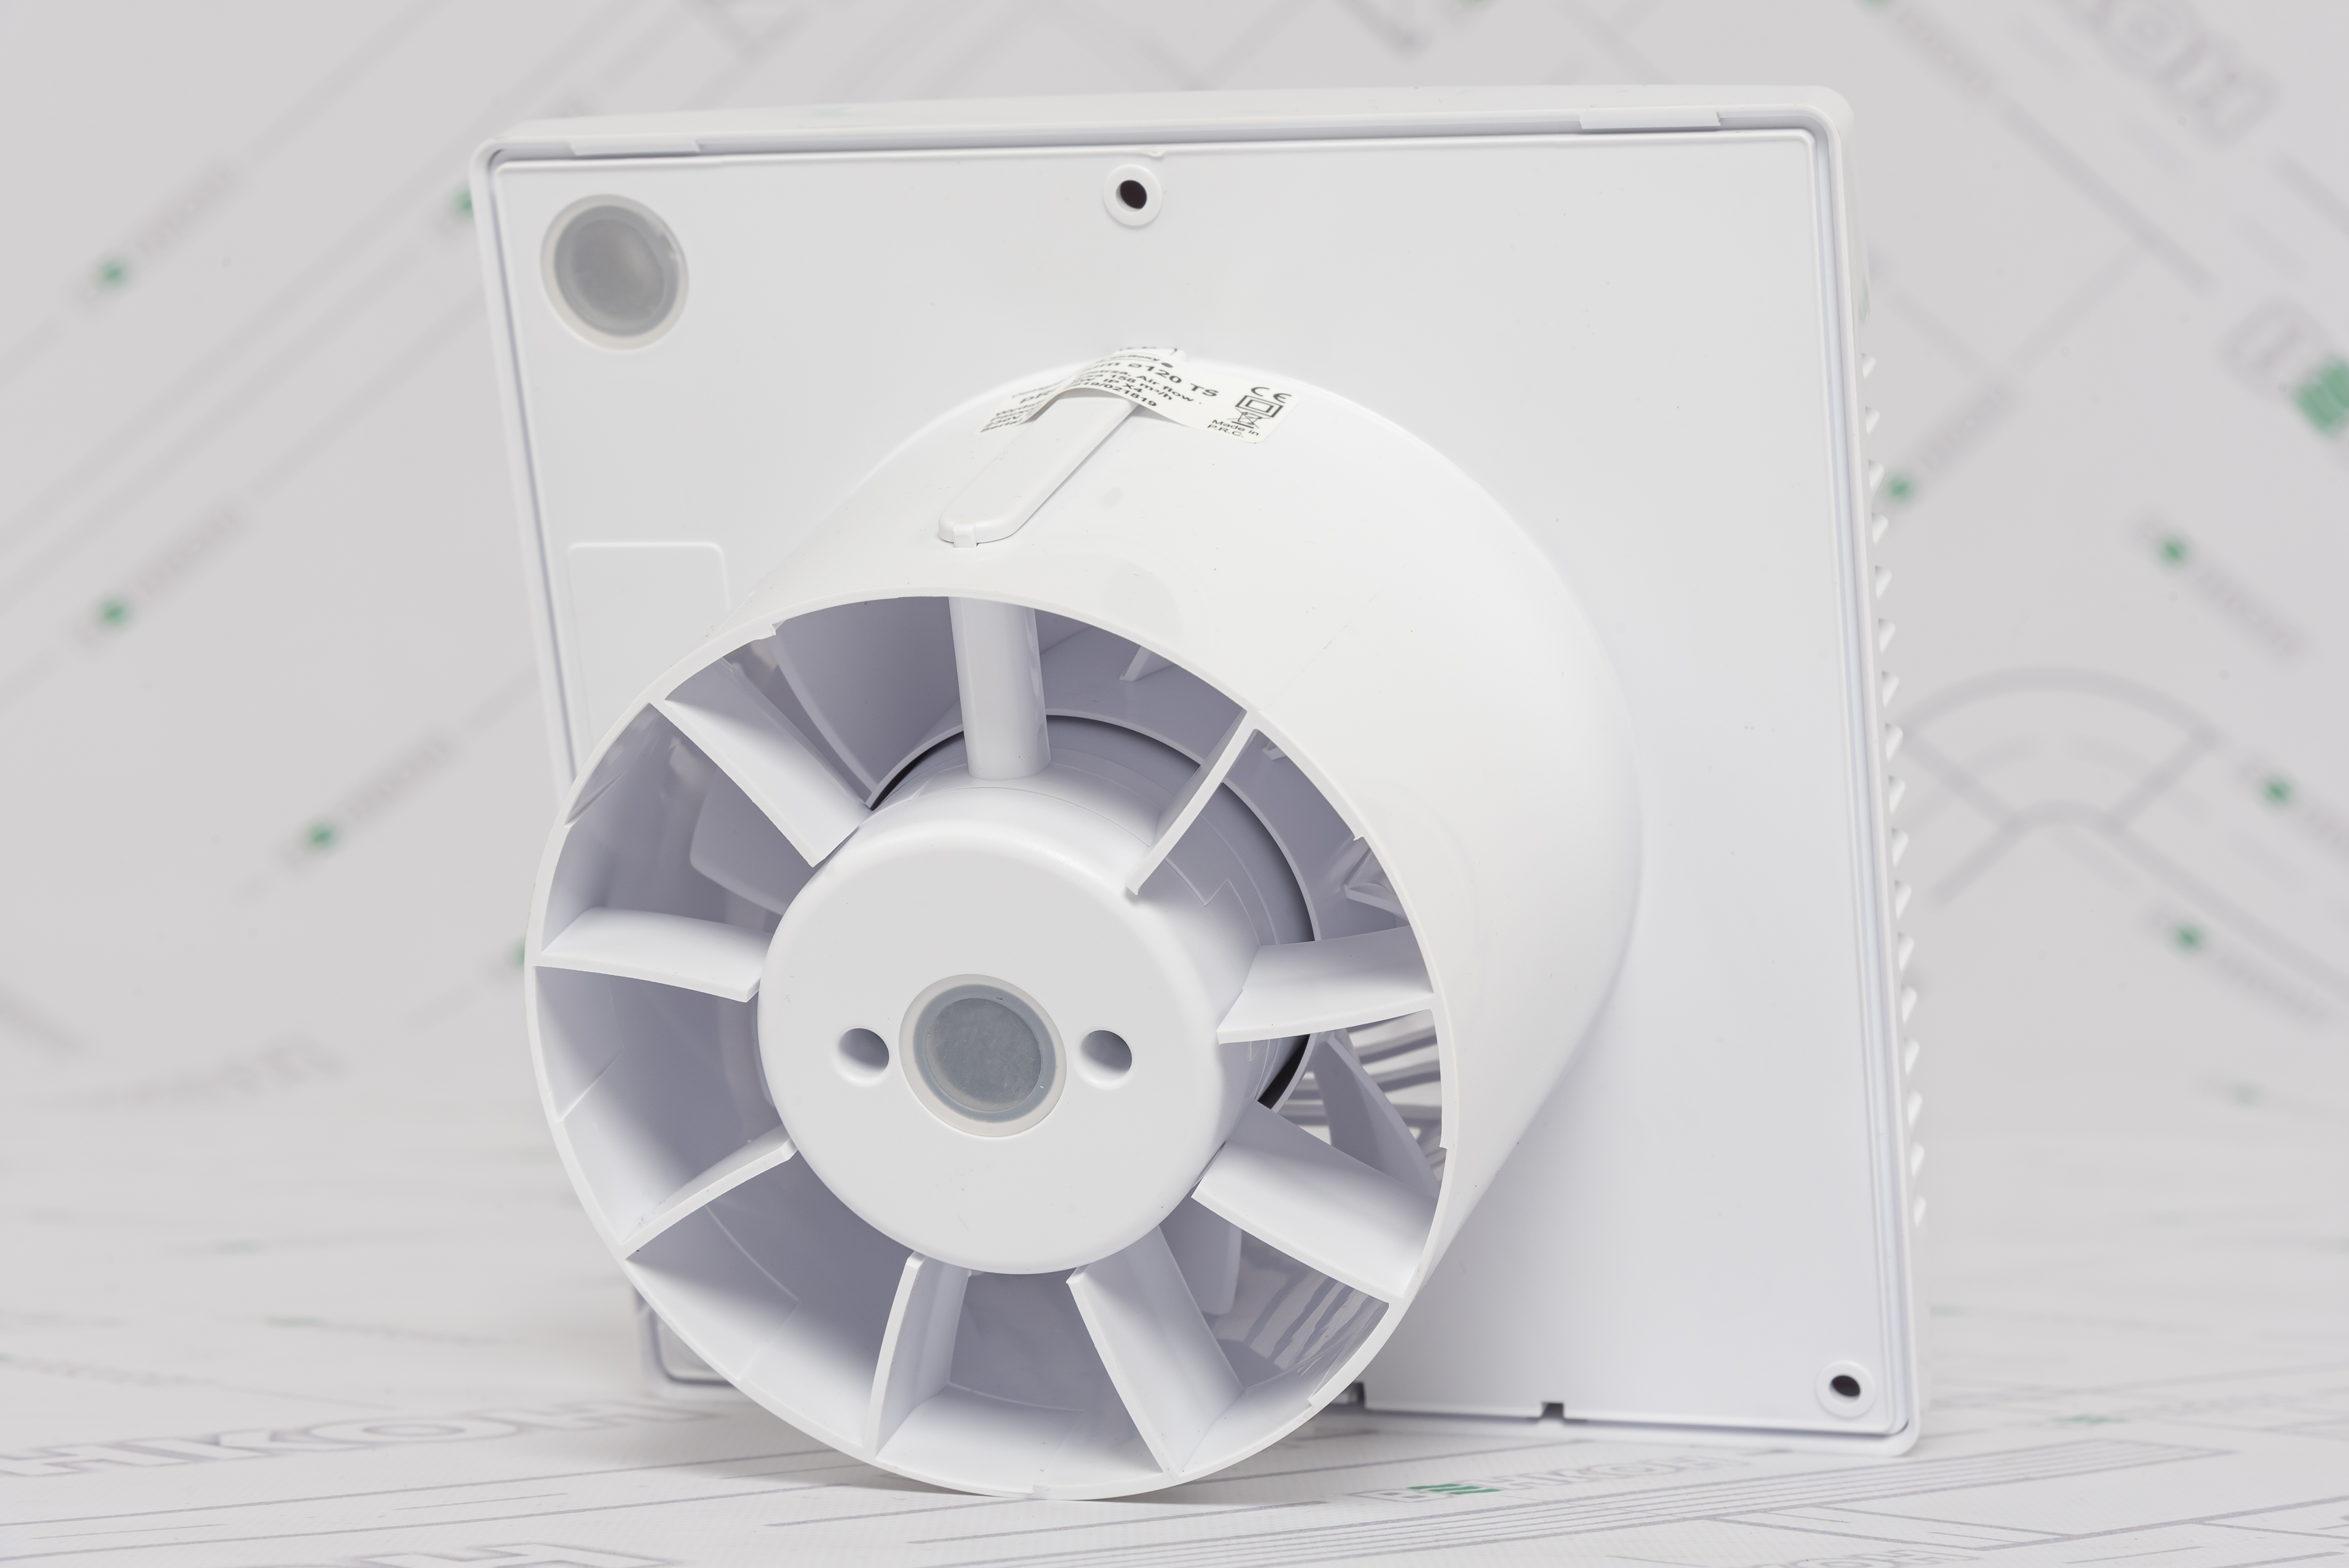 Вытяжной вентилятор AirRoxy pRemium 120 TS (01-019) отзывы - изображения 5